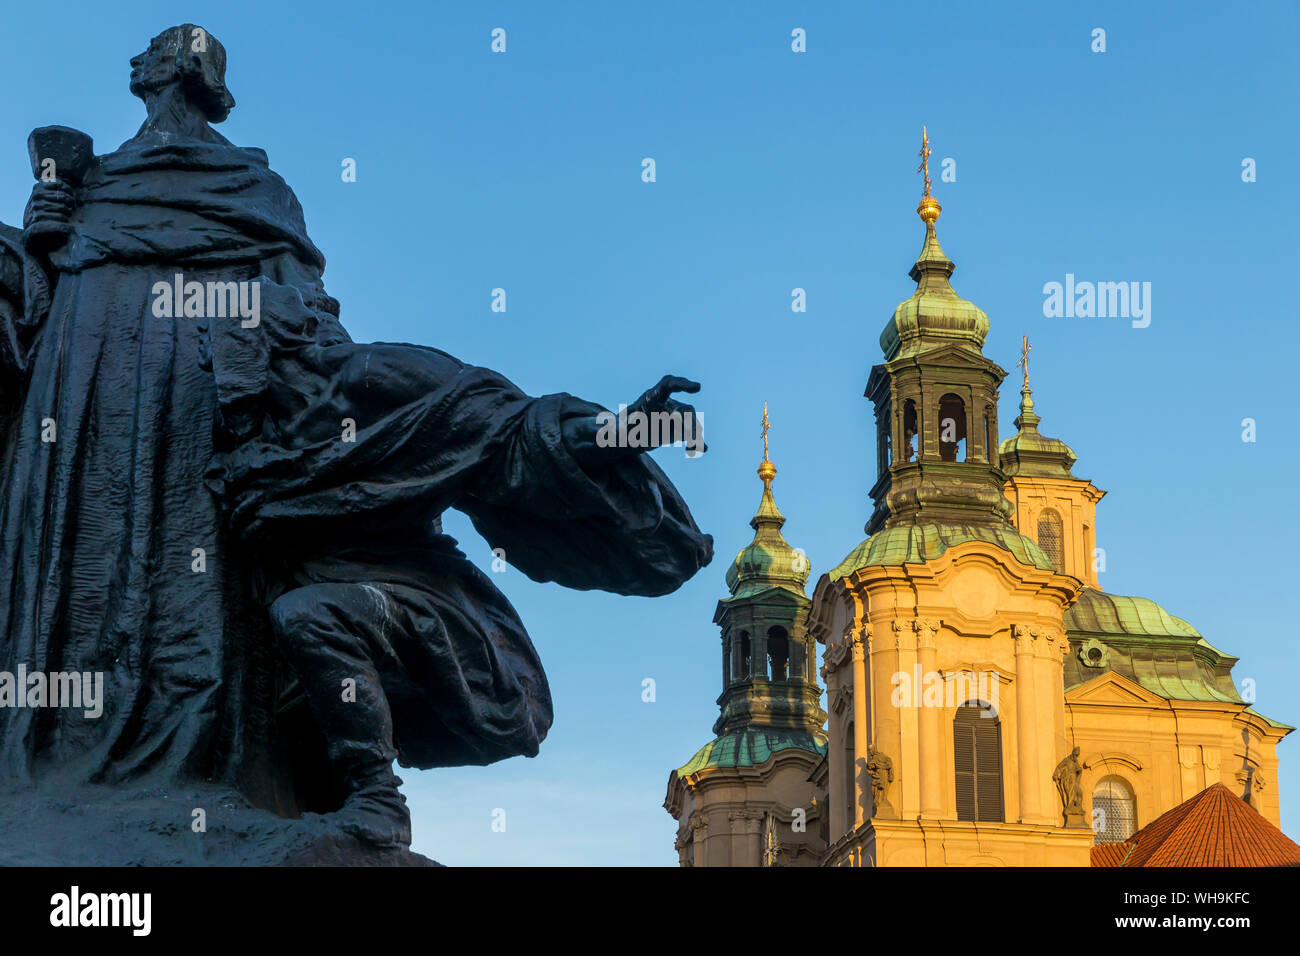 Jan Hus Monument et St Nicholas' Church vu de la place du marché de la vieille ville le matin, Prague, la Bohême, République Tchèque, Europe Banque D'Images